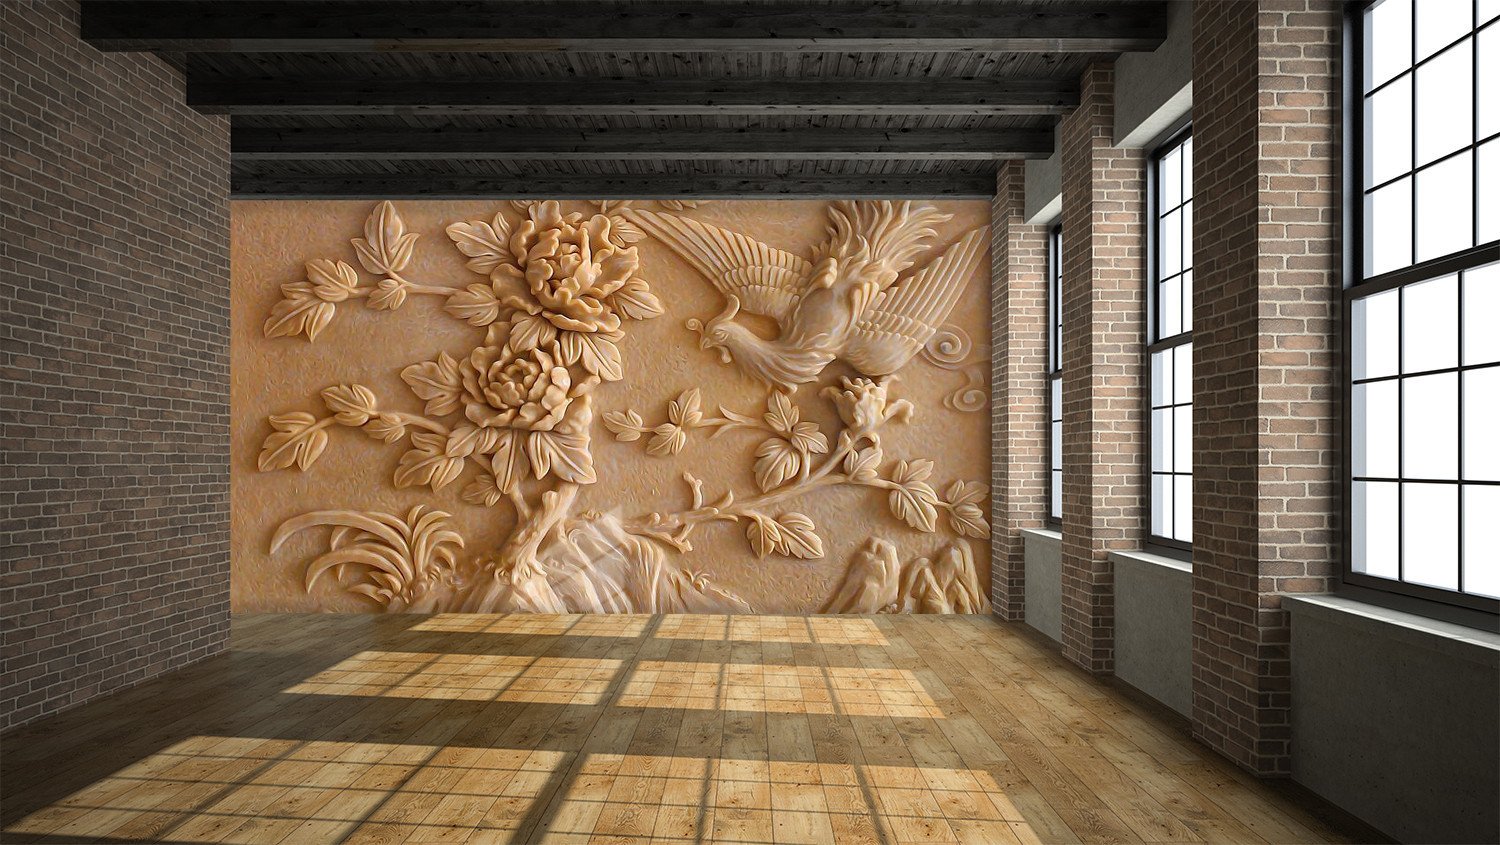 3D Bird flower stone sculpture Wallpaper AJ Wallpaper 1 